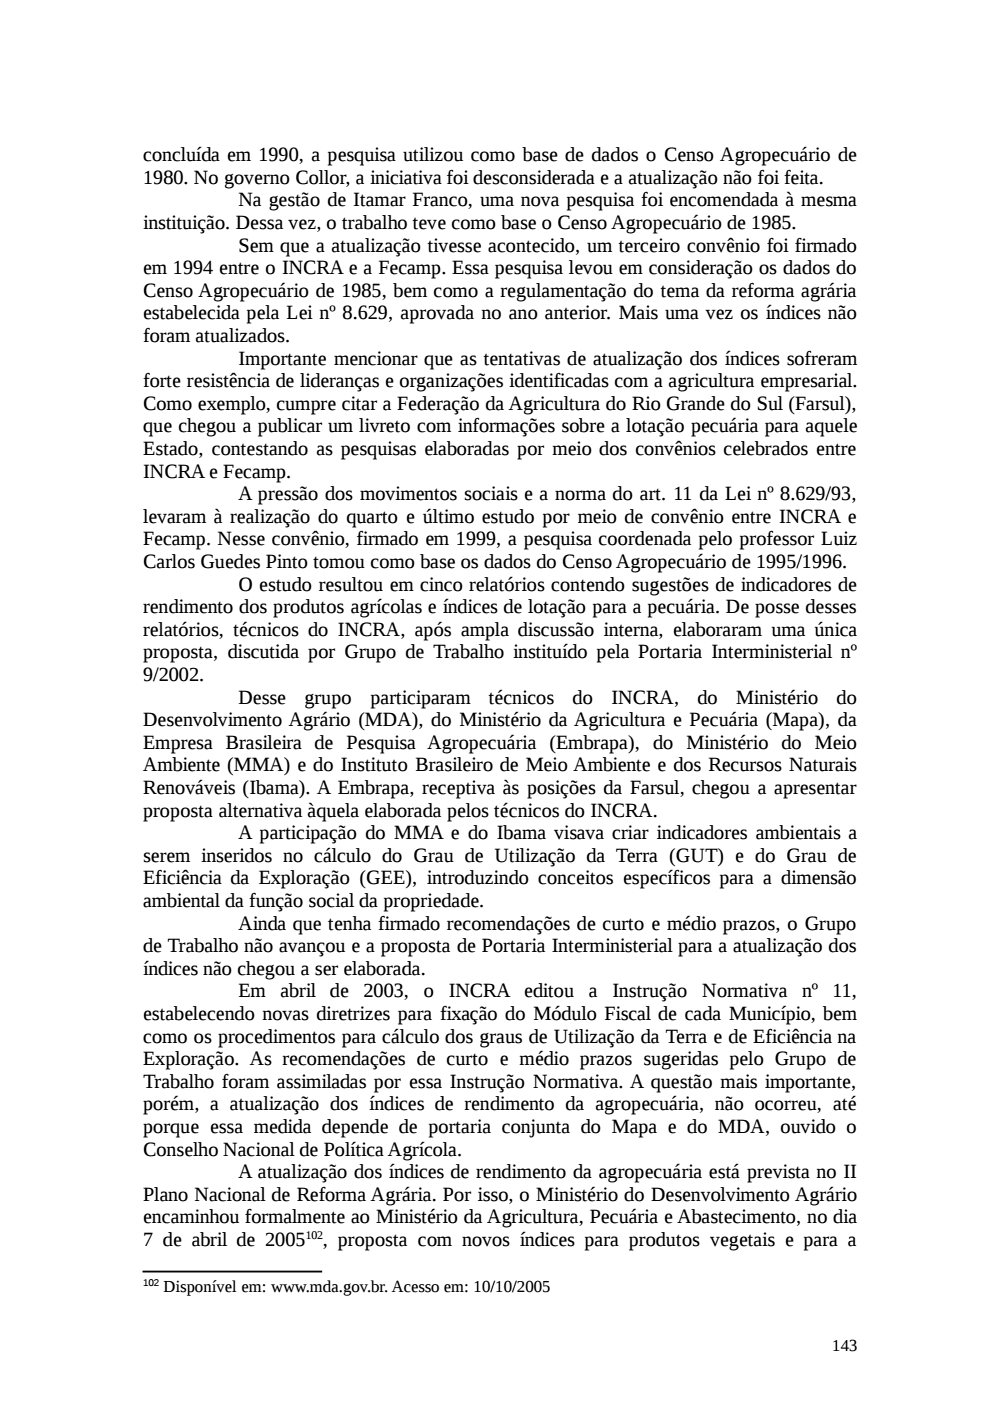 Page 143 from Relatório final da comissão